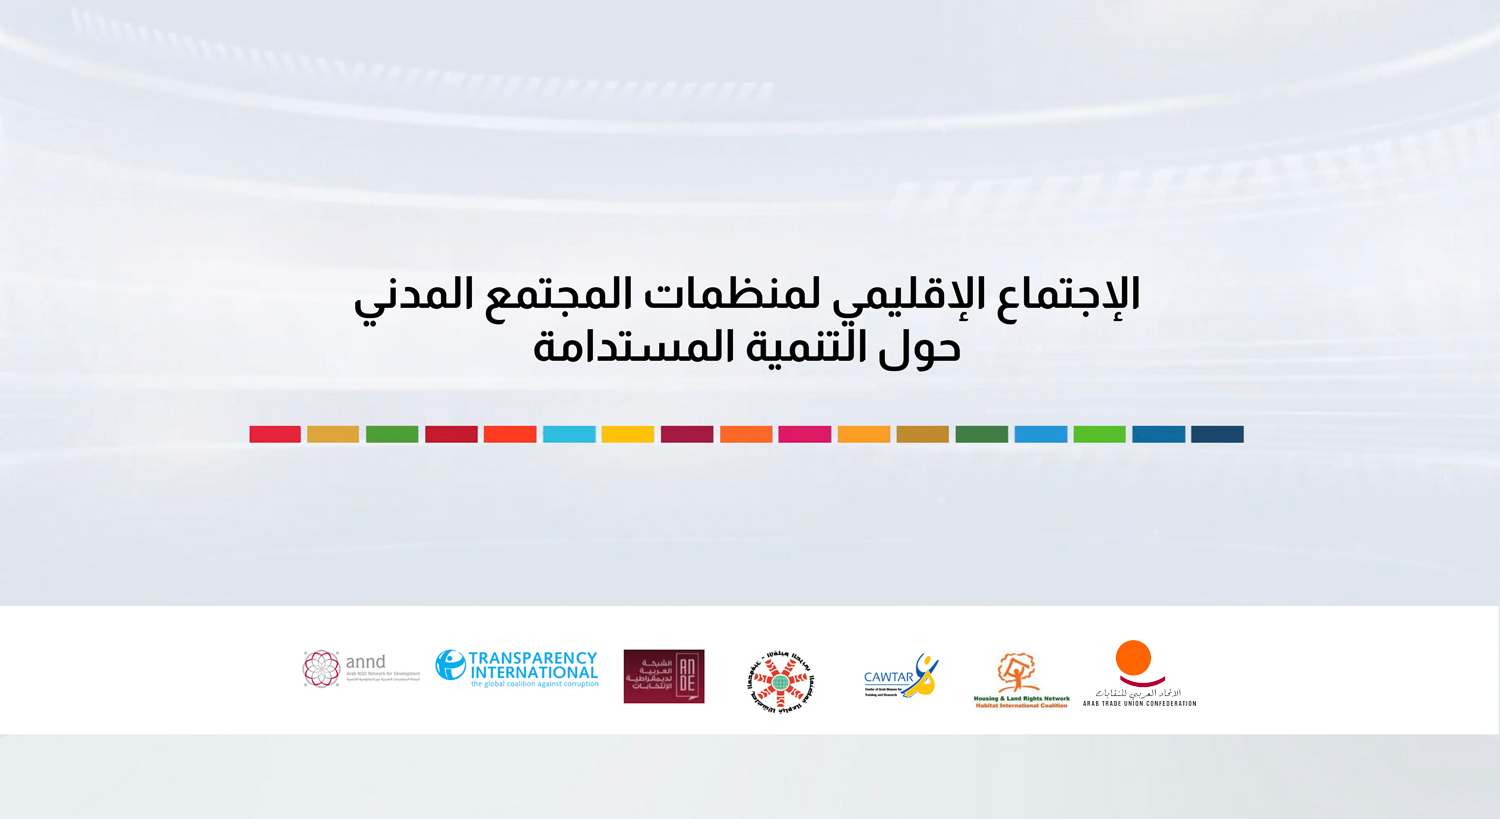 المنتدى الإقليمي للمجتمع المدني حول التنمية المستدامة في المنطقة العربية